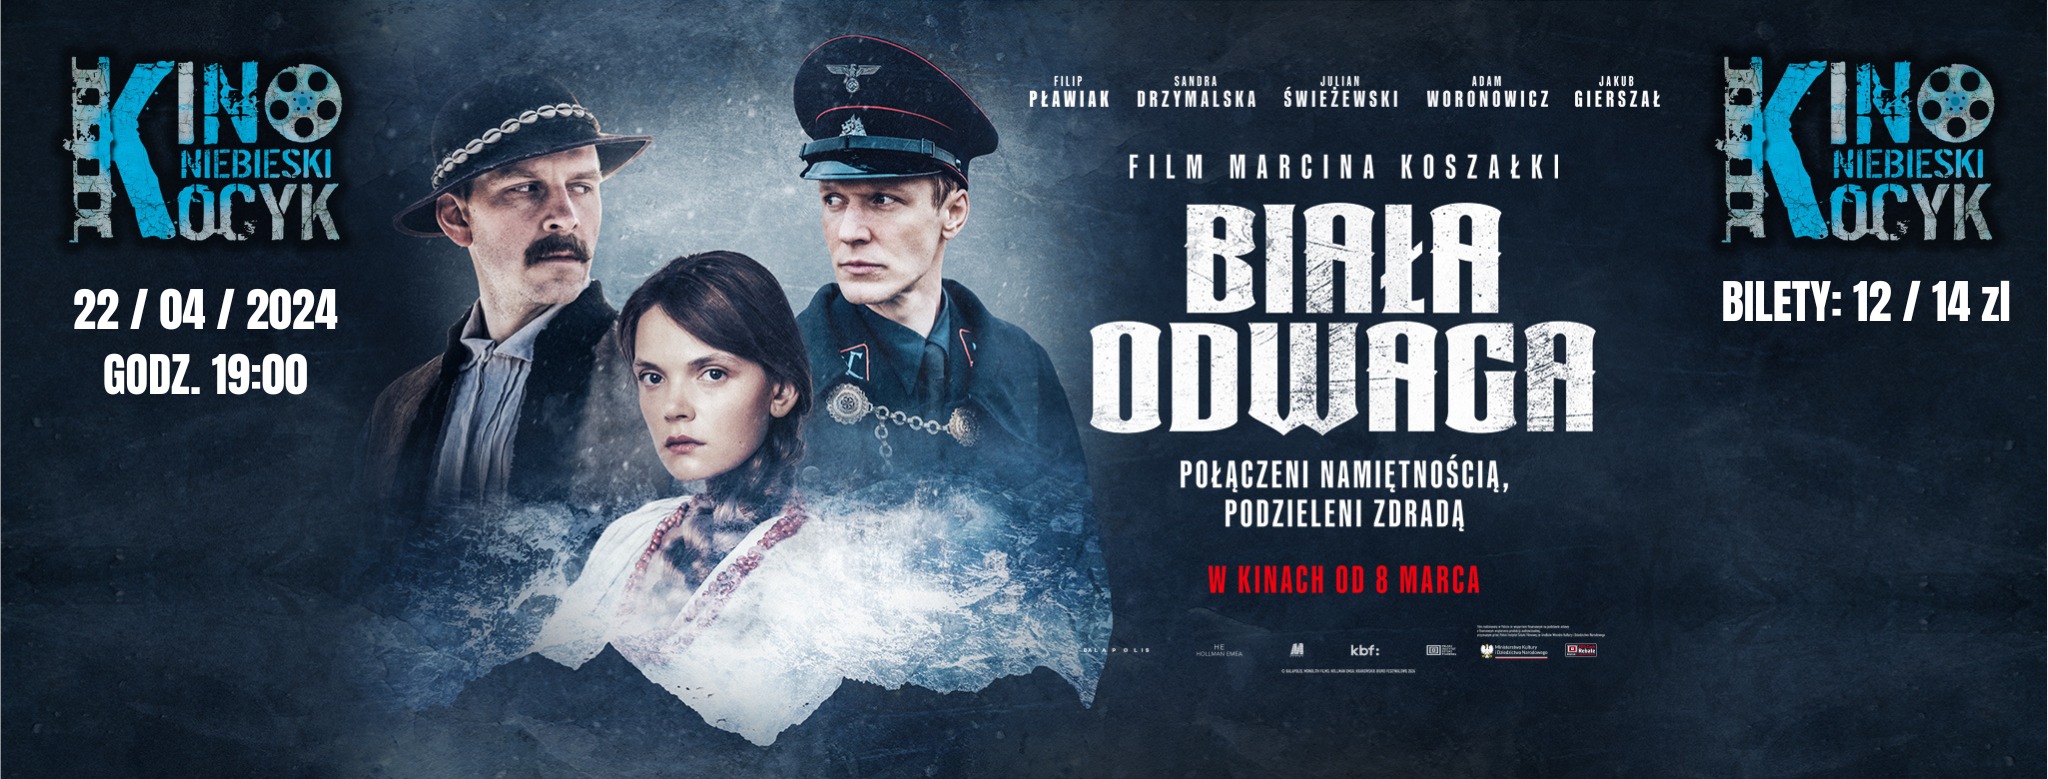 Kino Studenckie “Niebieski Kocyk”: Biała odwaga